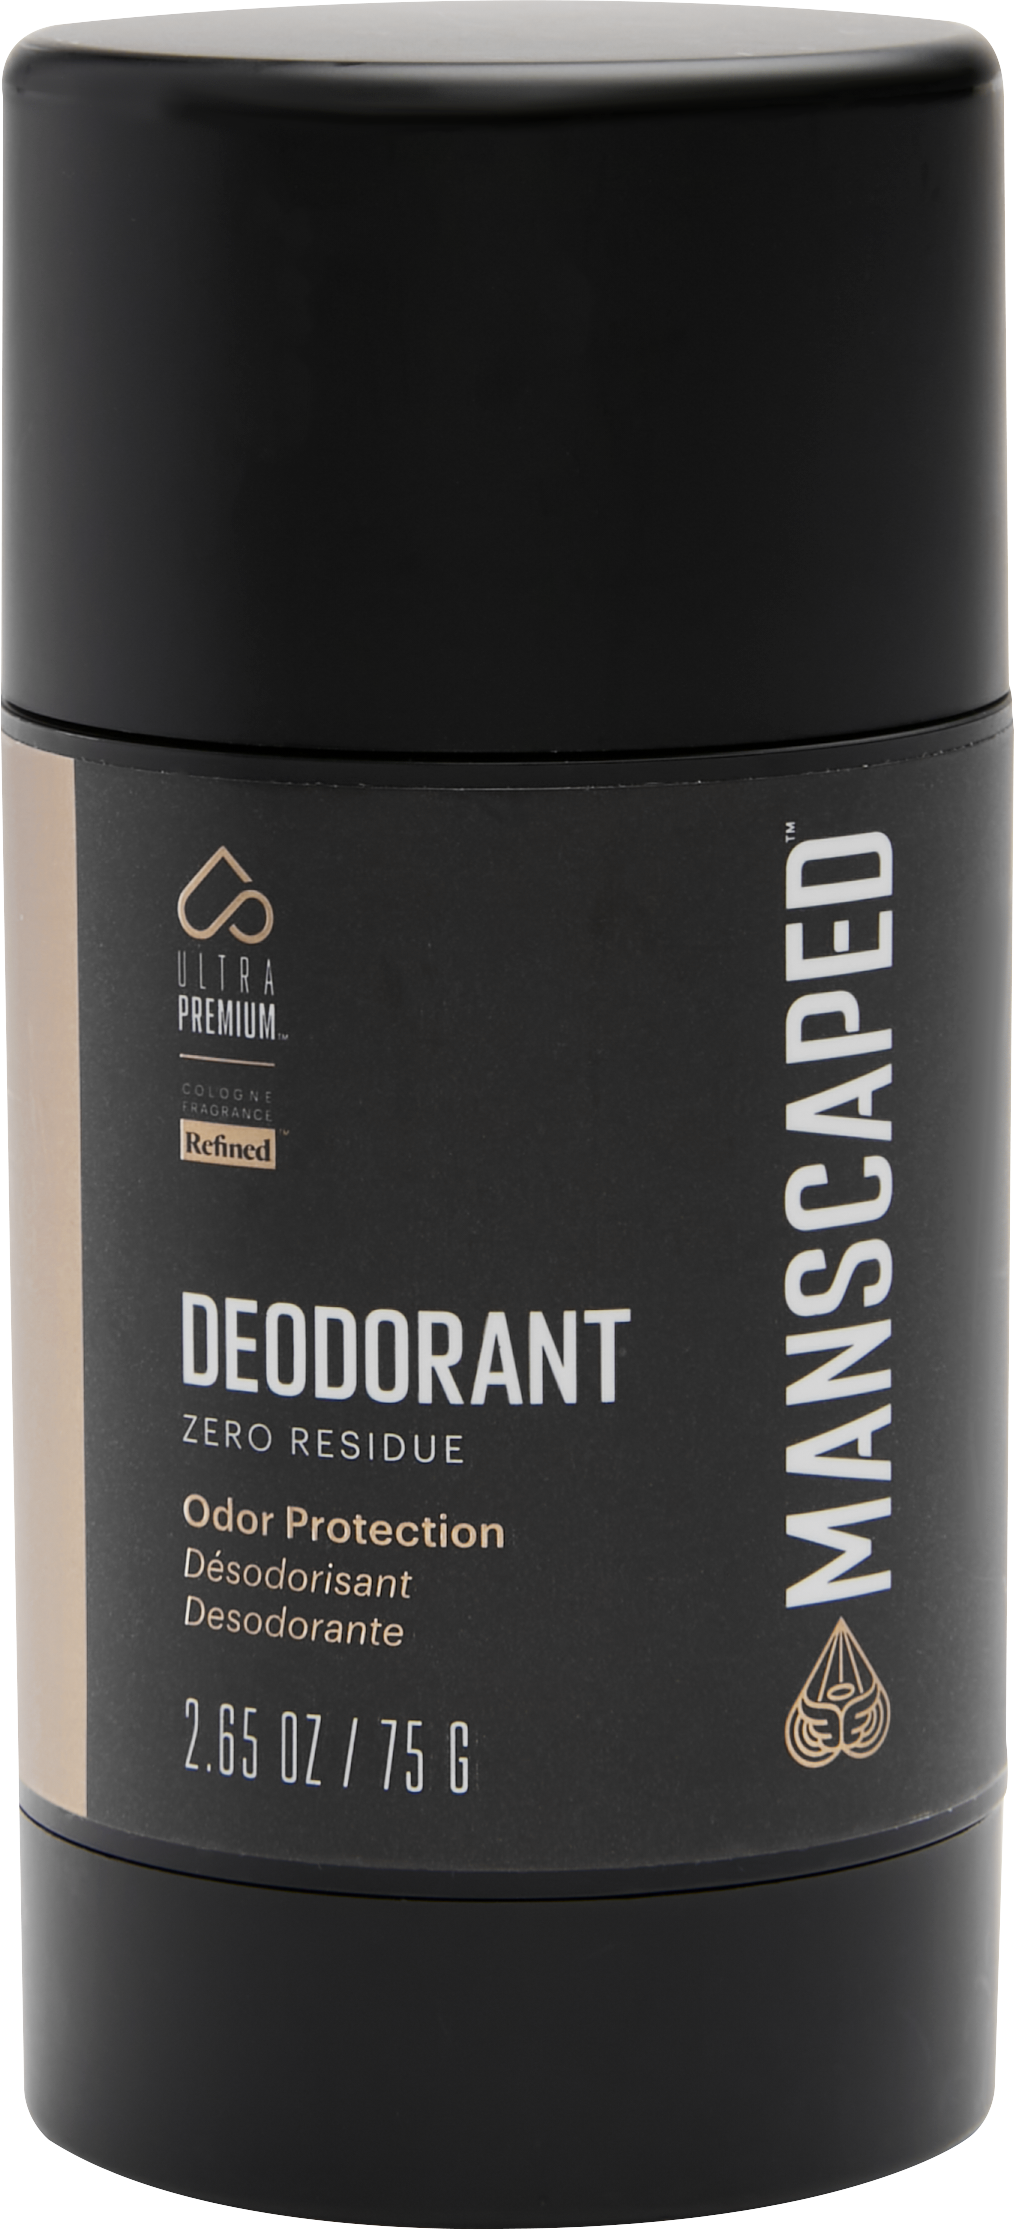 Deodorant, 2.65 oz.